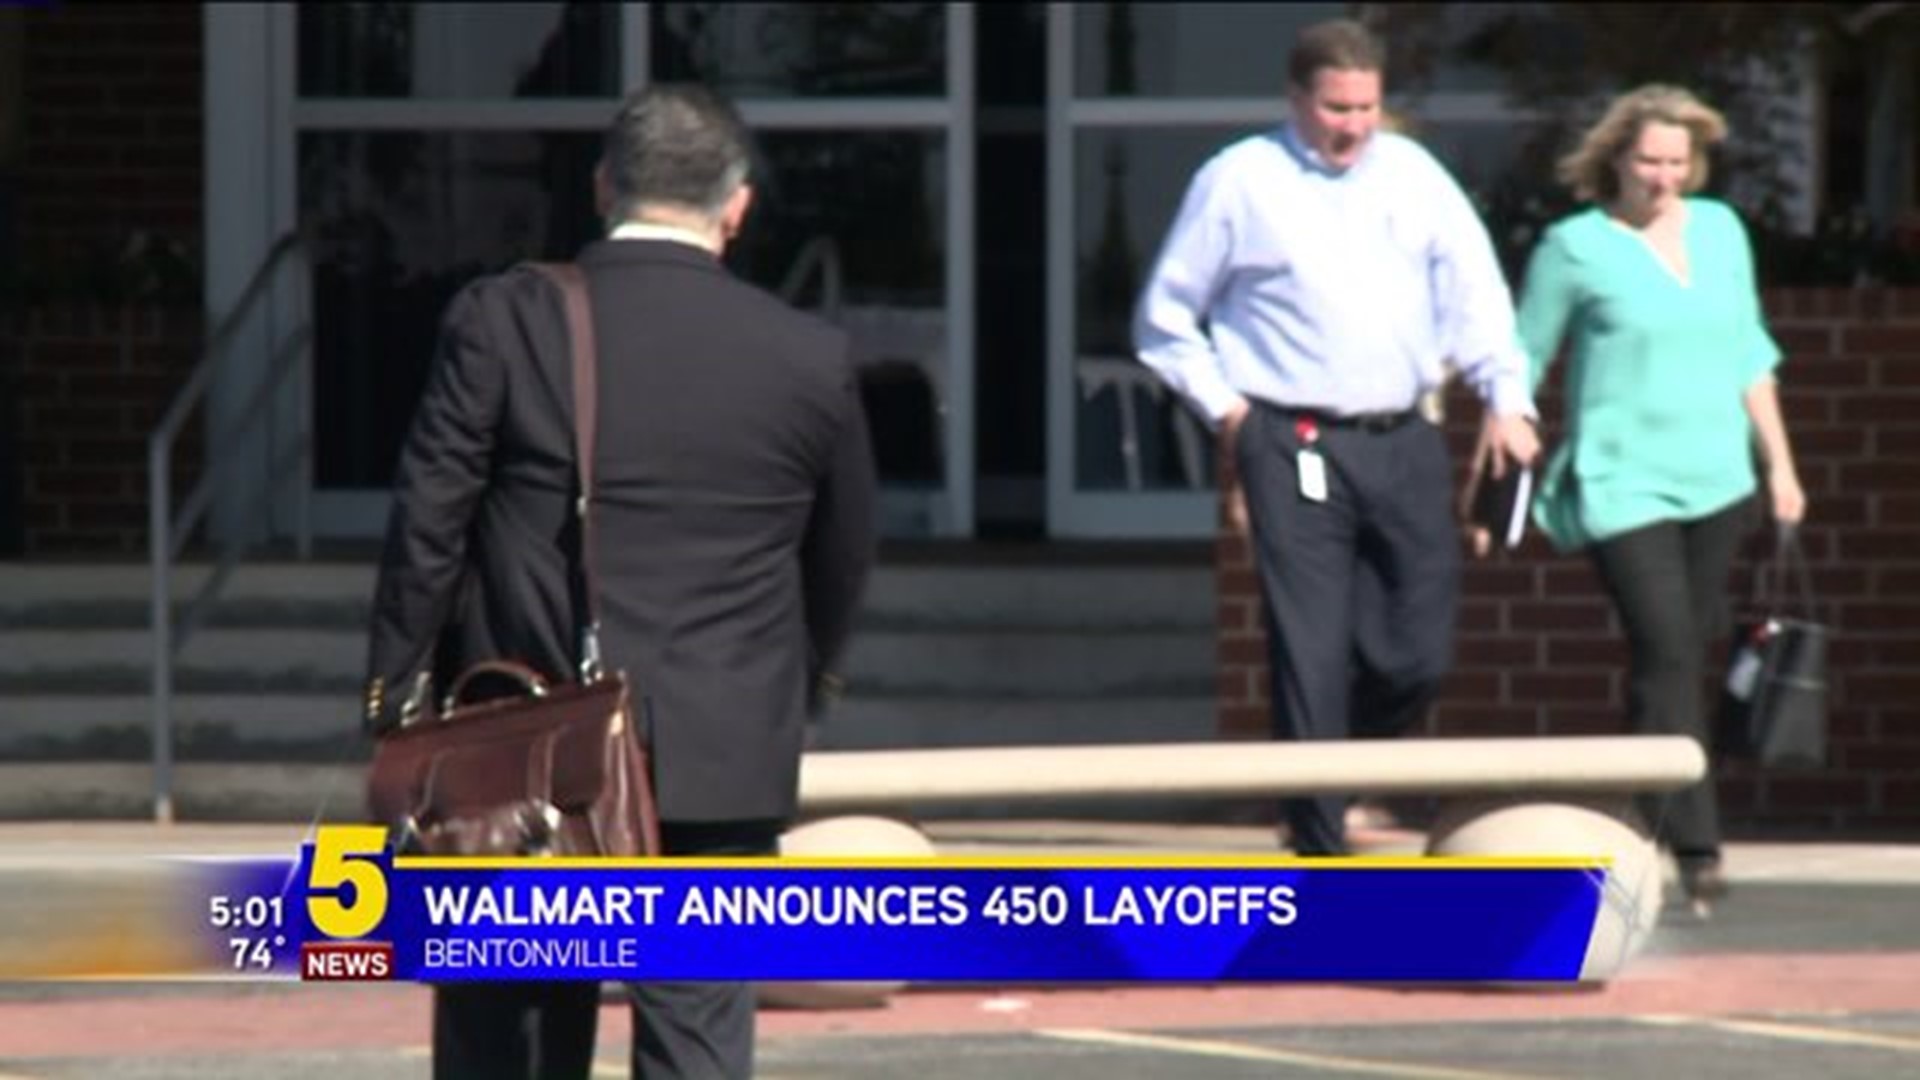 Walmart Announces Layoffs